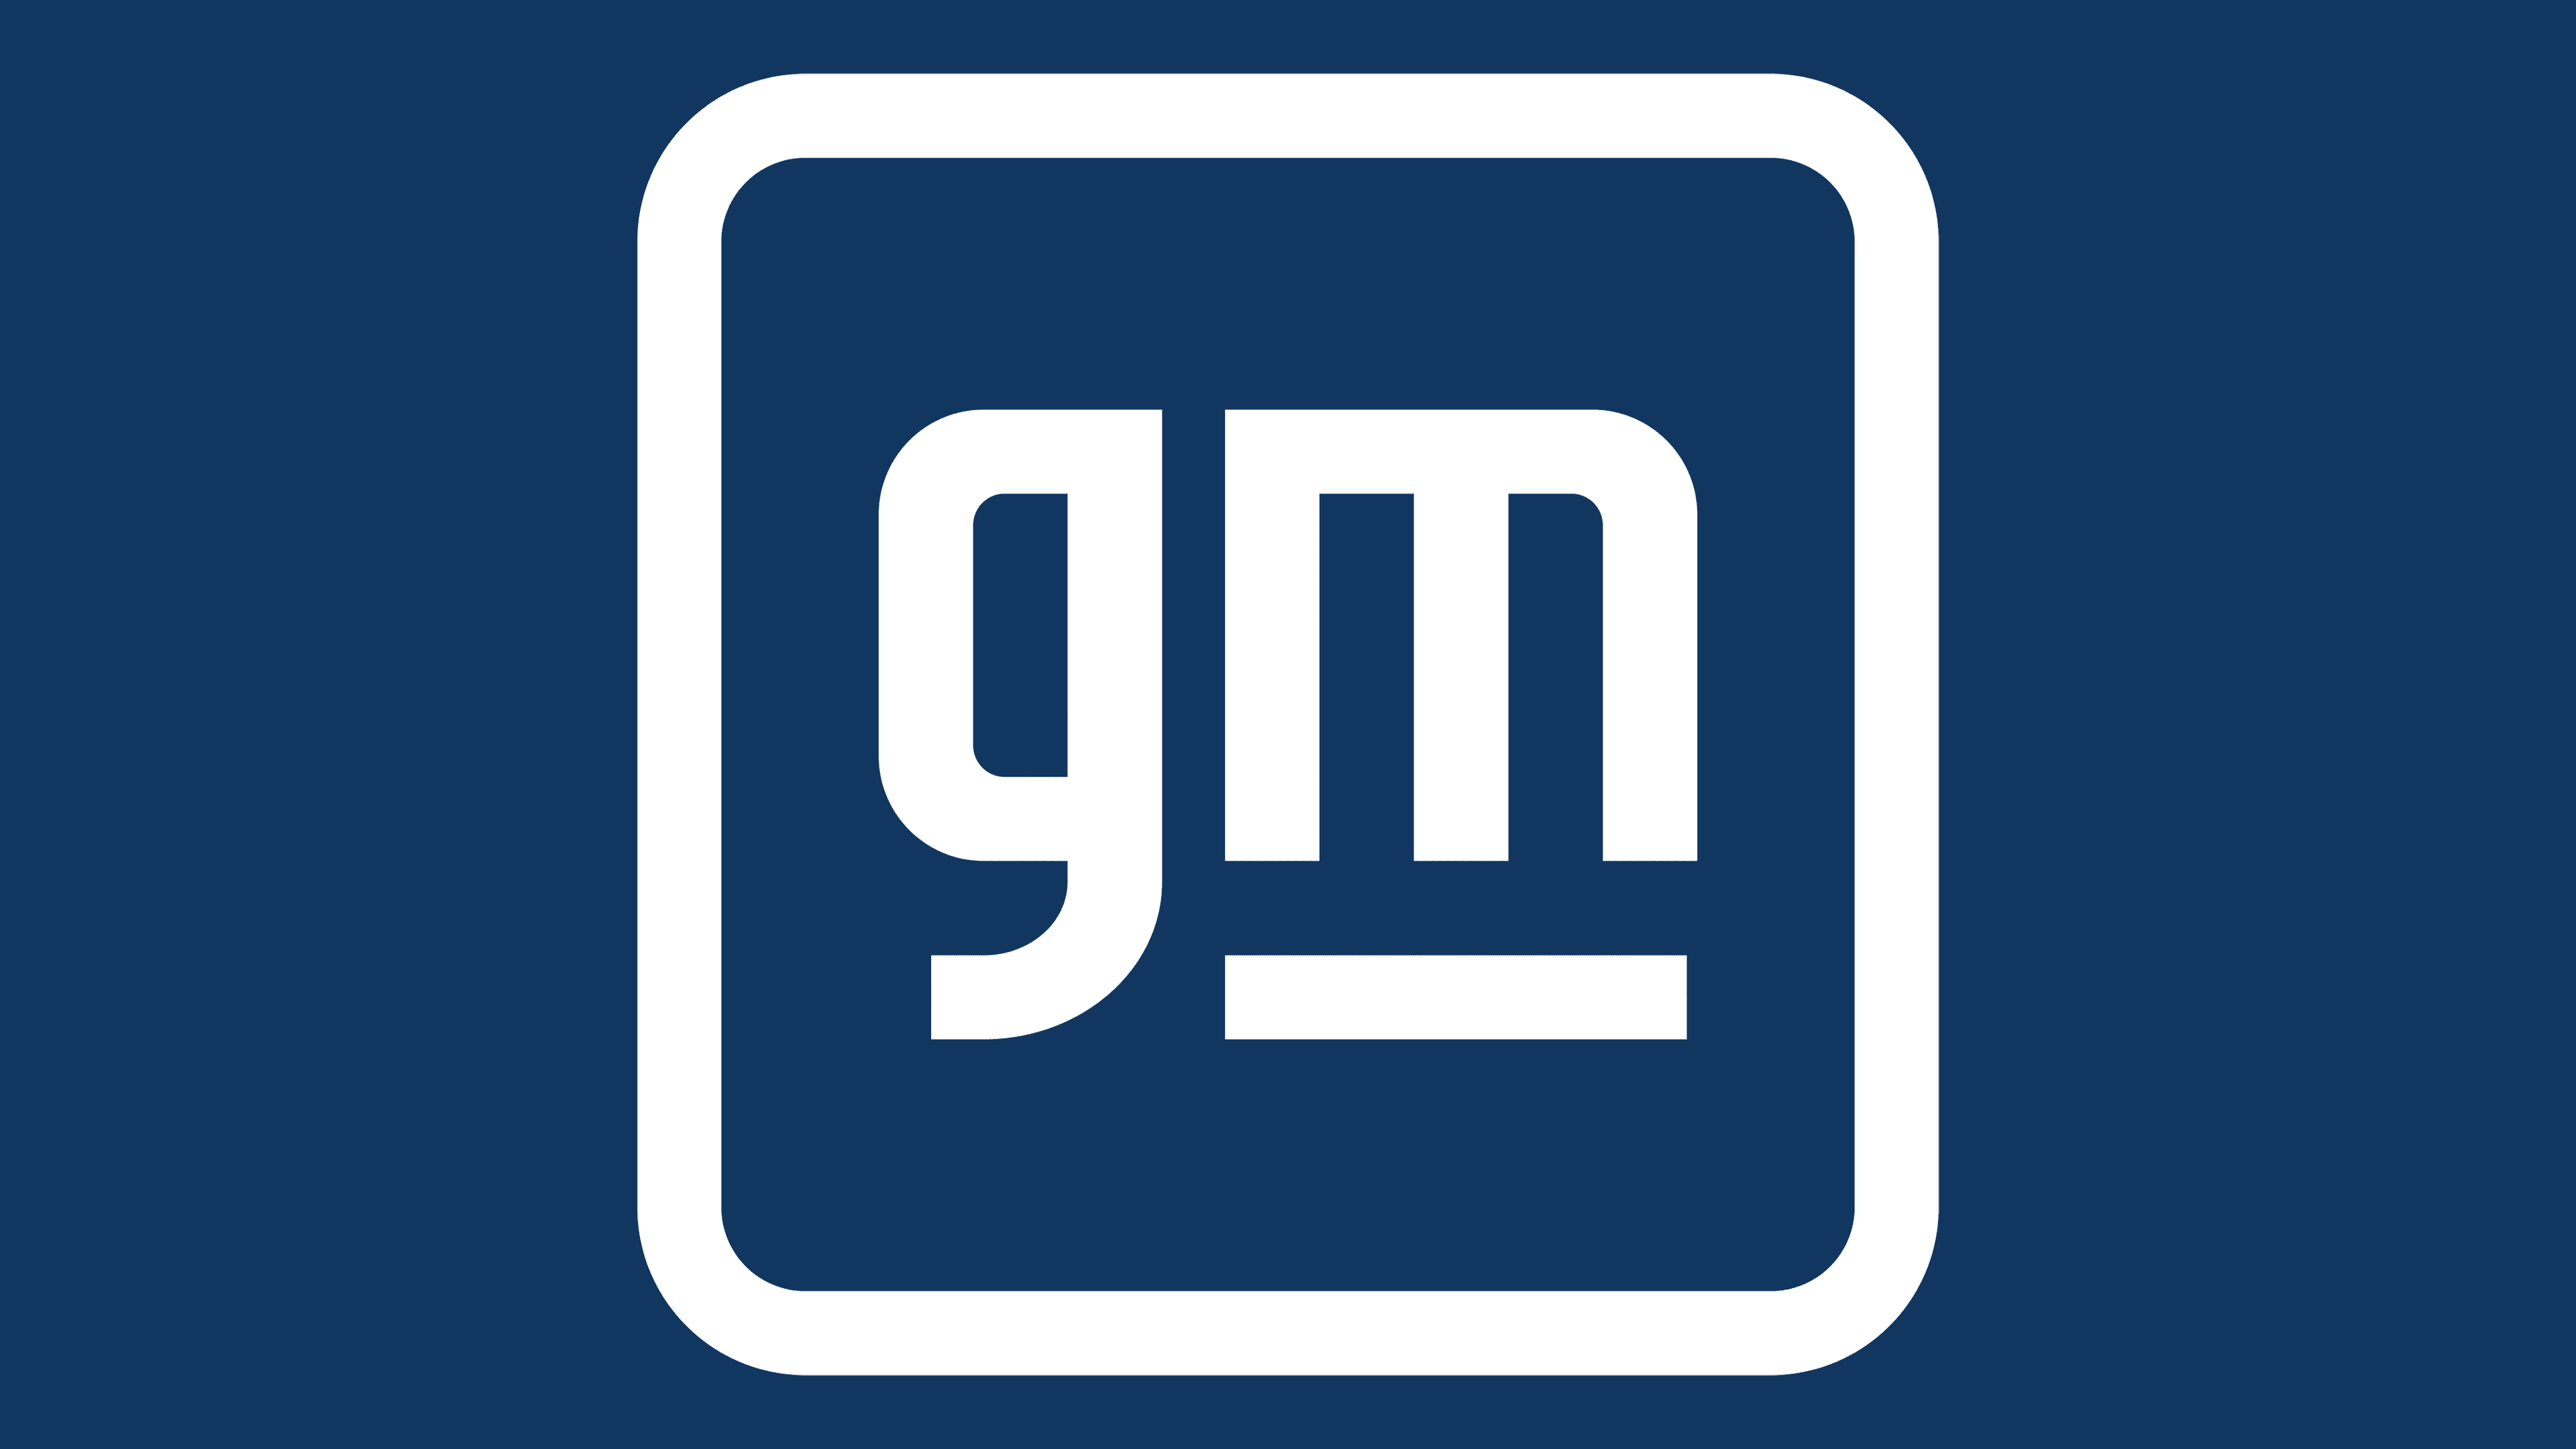 general motors cars logo